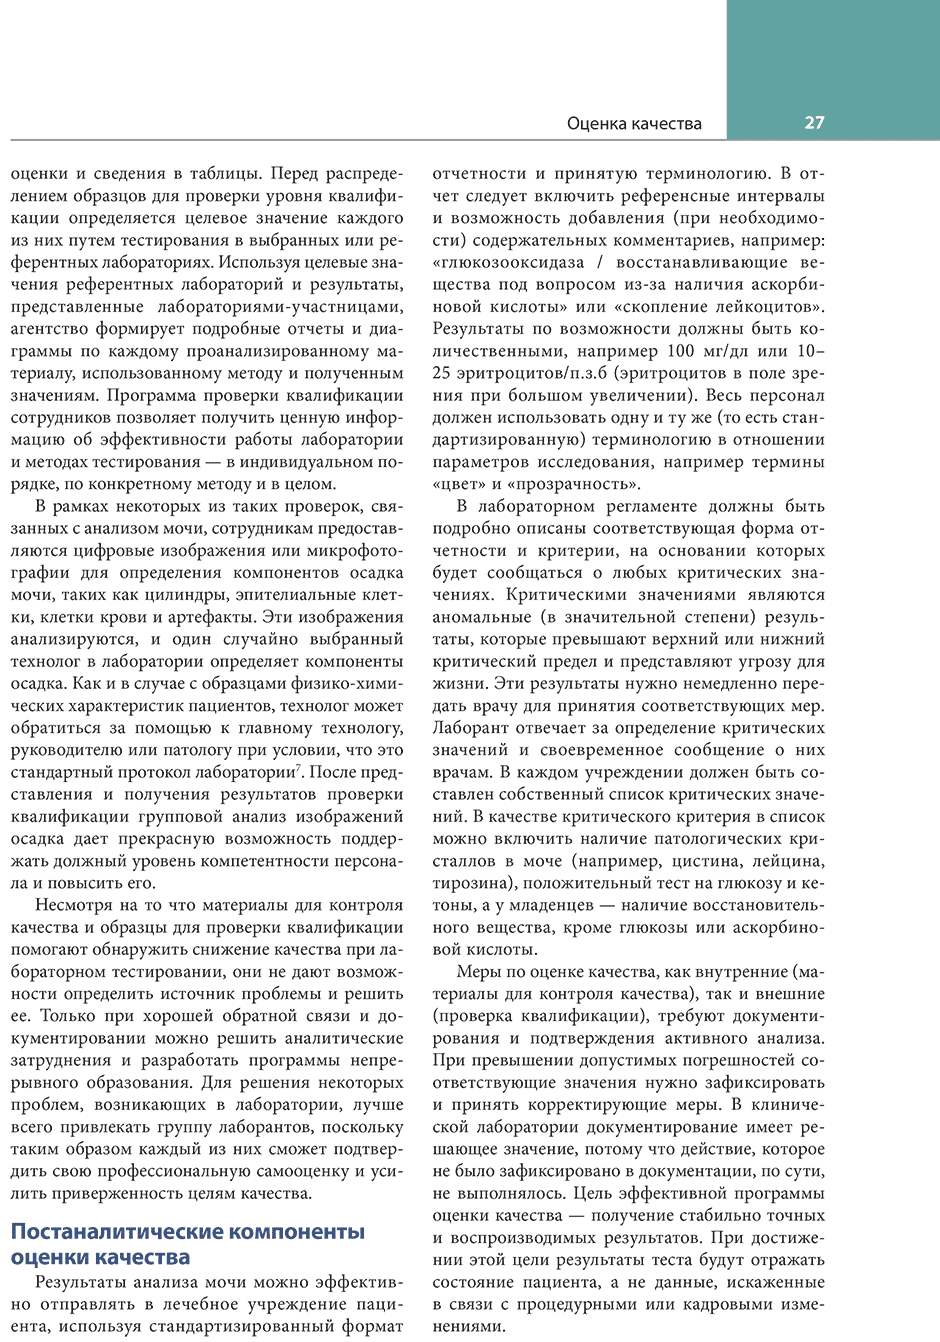 Пример страницы из книги "Клинико-лабораторный анализ мочи и биологических жидкостей" - Бранзел Н. А.